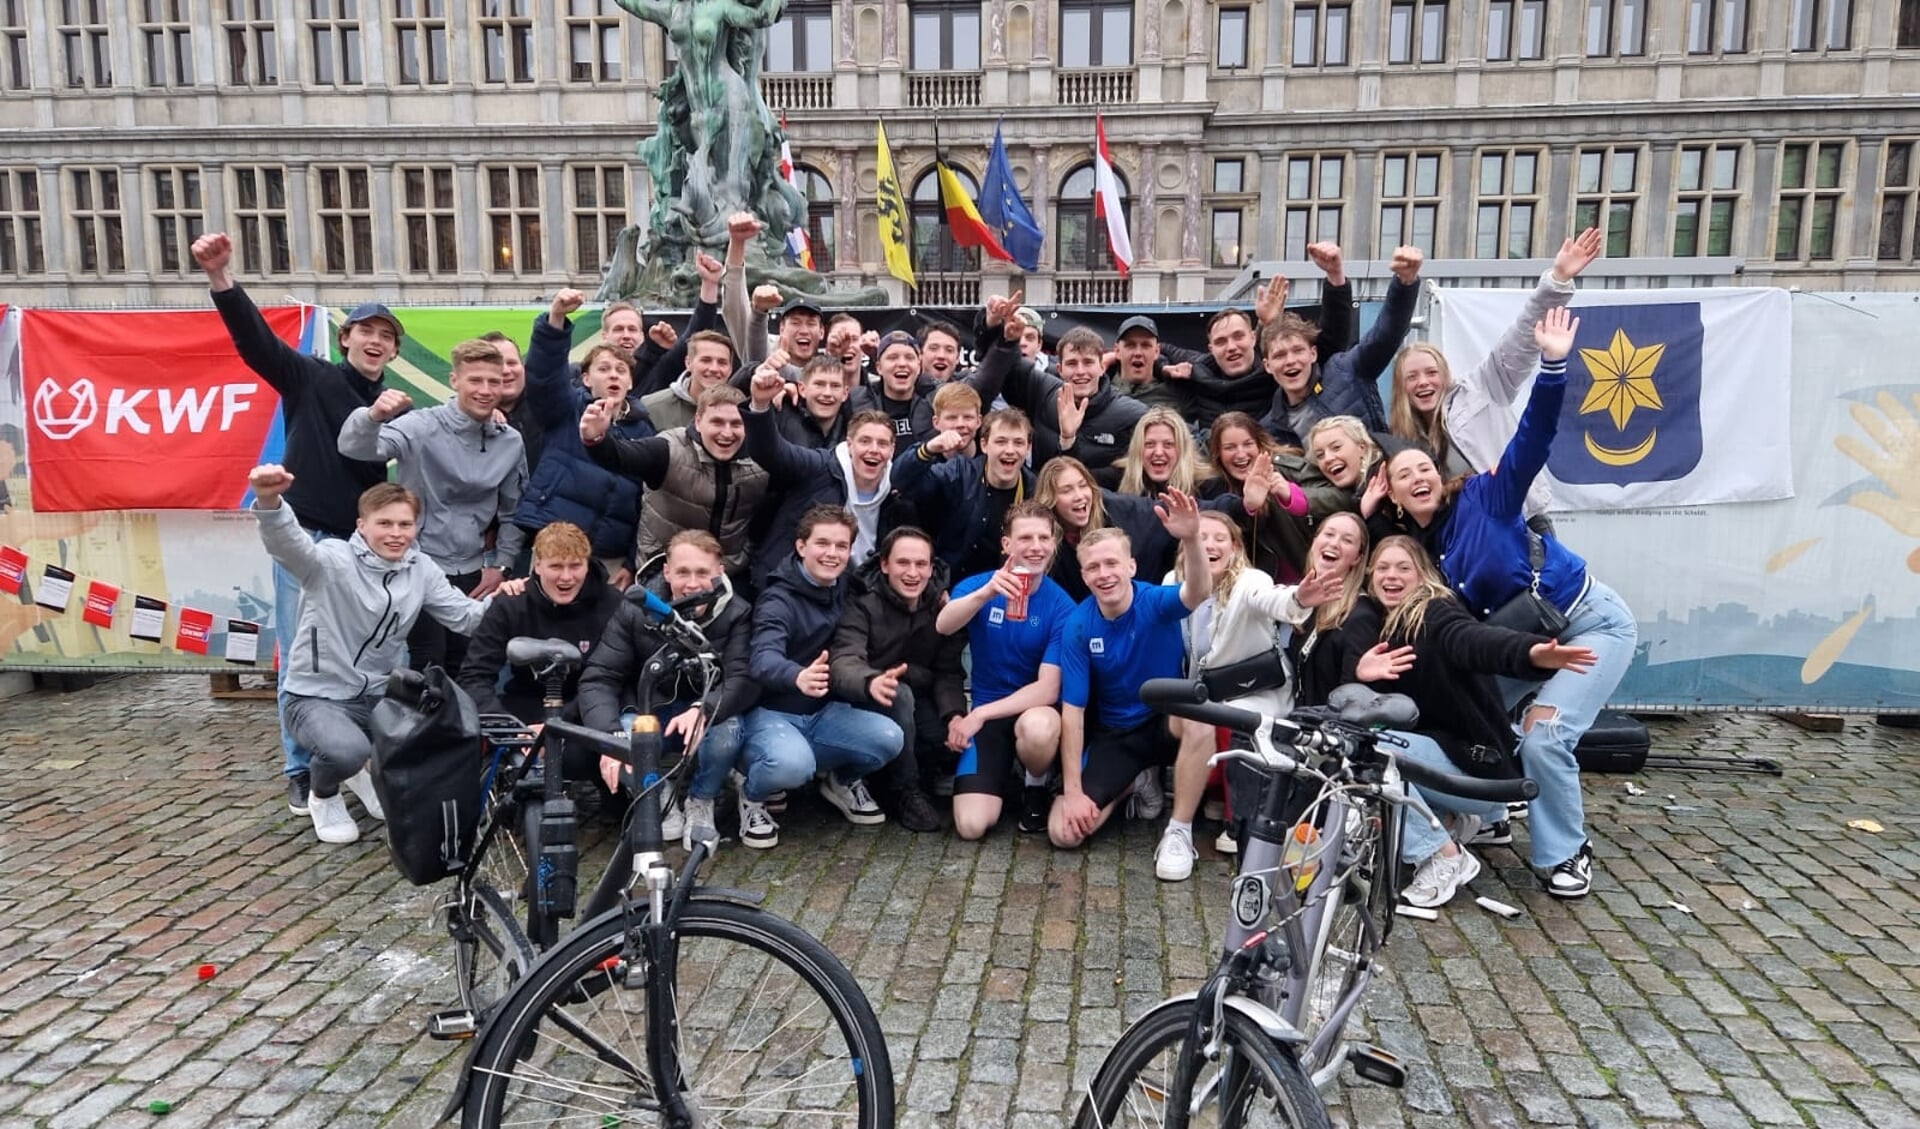 De twee fietsers wachtte een warm onthaal in Antwerpen, na hun zeer geslaagde missie. Foto: PR